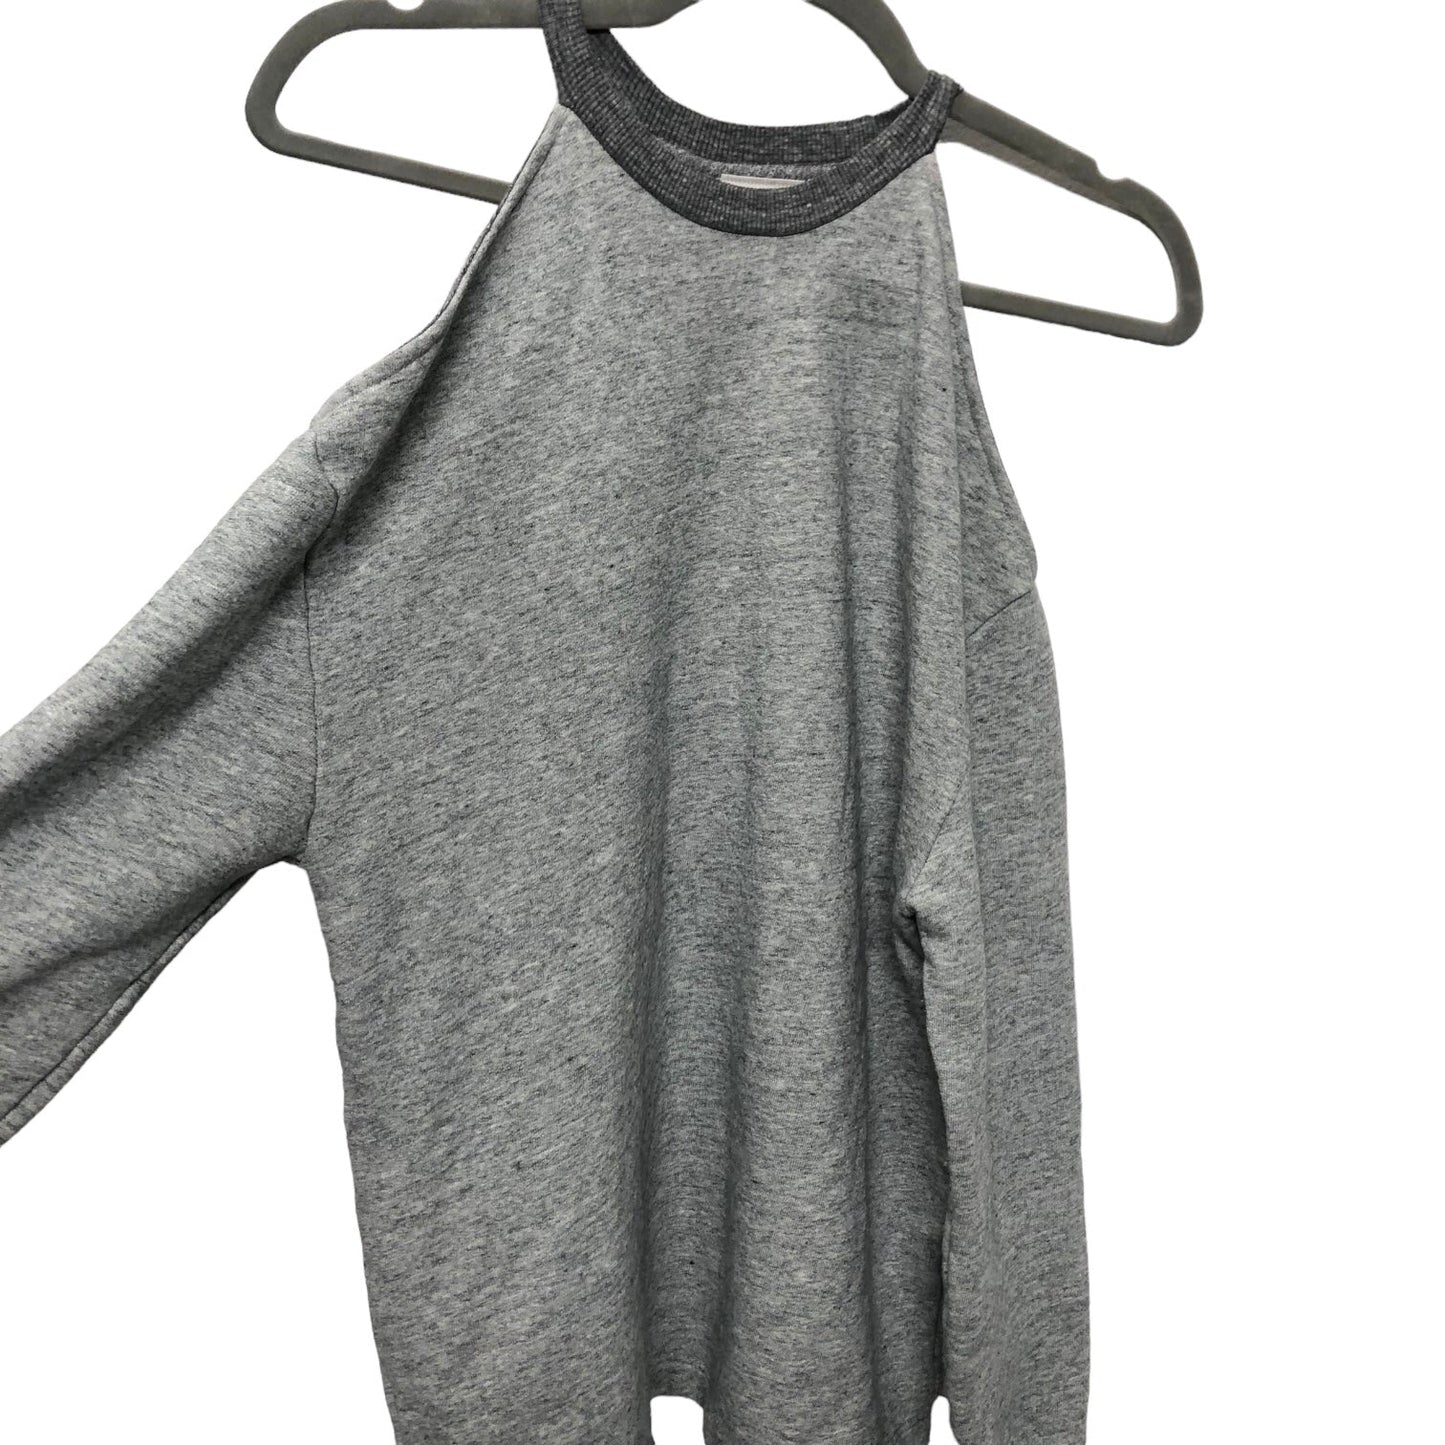 Sweatshirt Crewneck By Adriano Goldschmied  Size: S